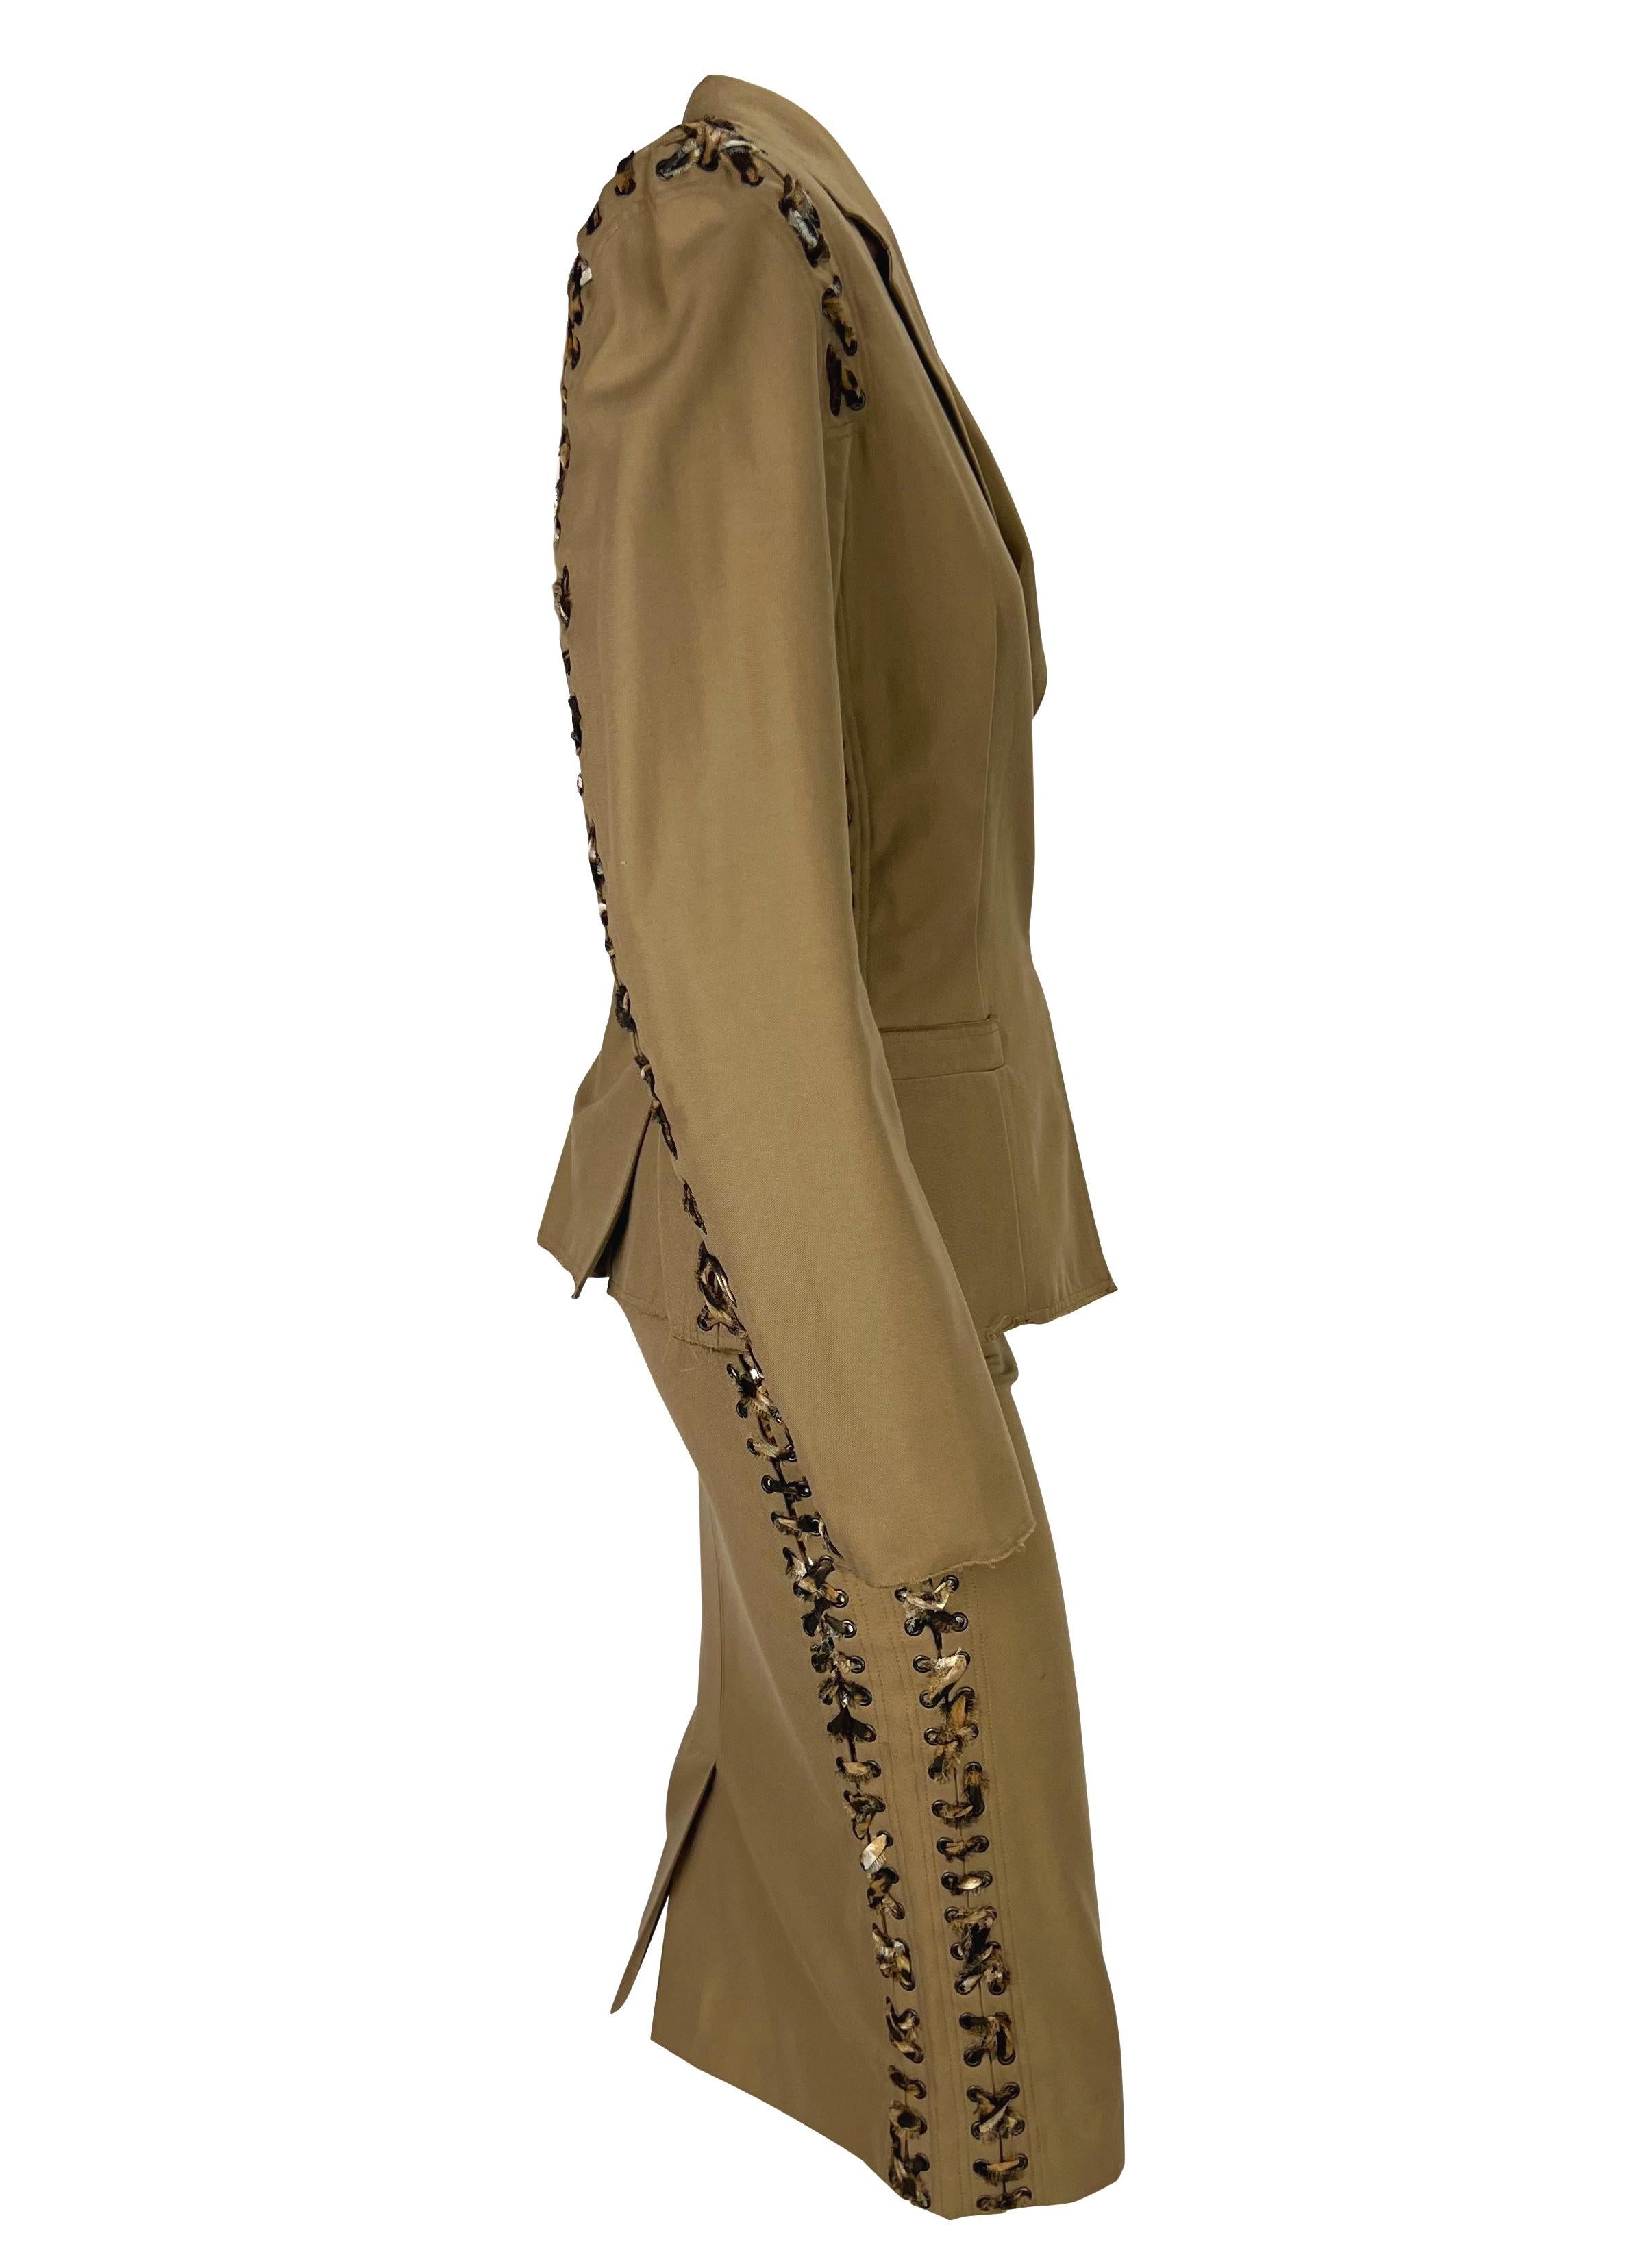 S/S 2002 Yves Saint Laurent by Tom Ford Safari Cheetah Print Lace-Up Khaki Suit (costume) en vente 3